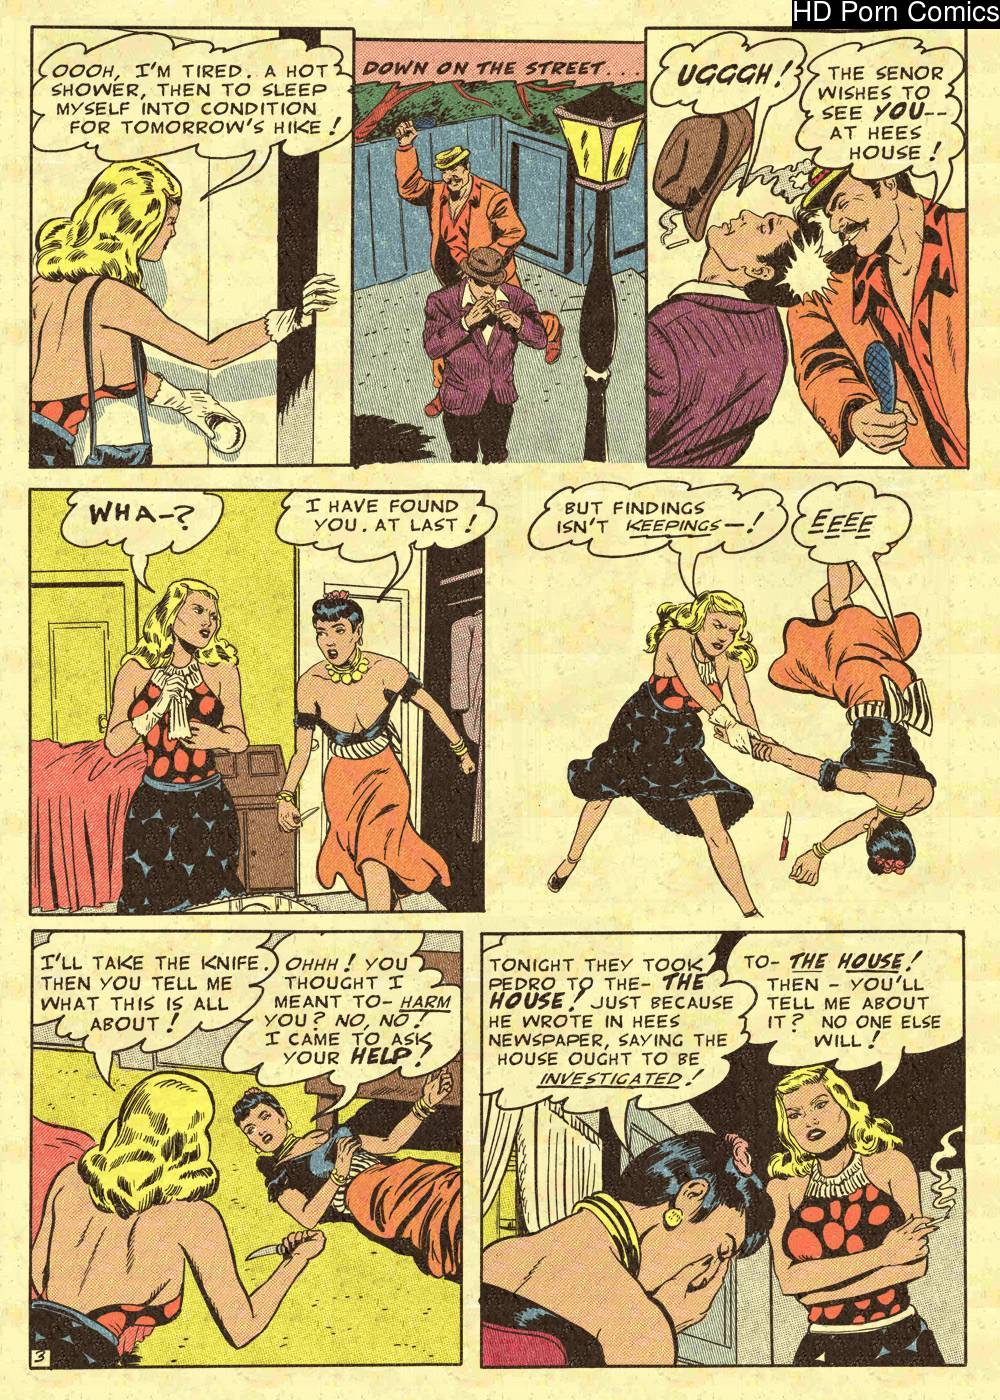 Retro Comic Book Porn - Wertham Files] Undercover Girl comic porn - HD Porn Comics